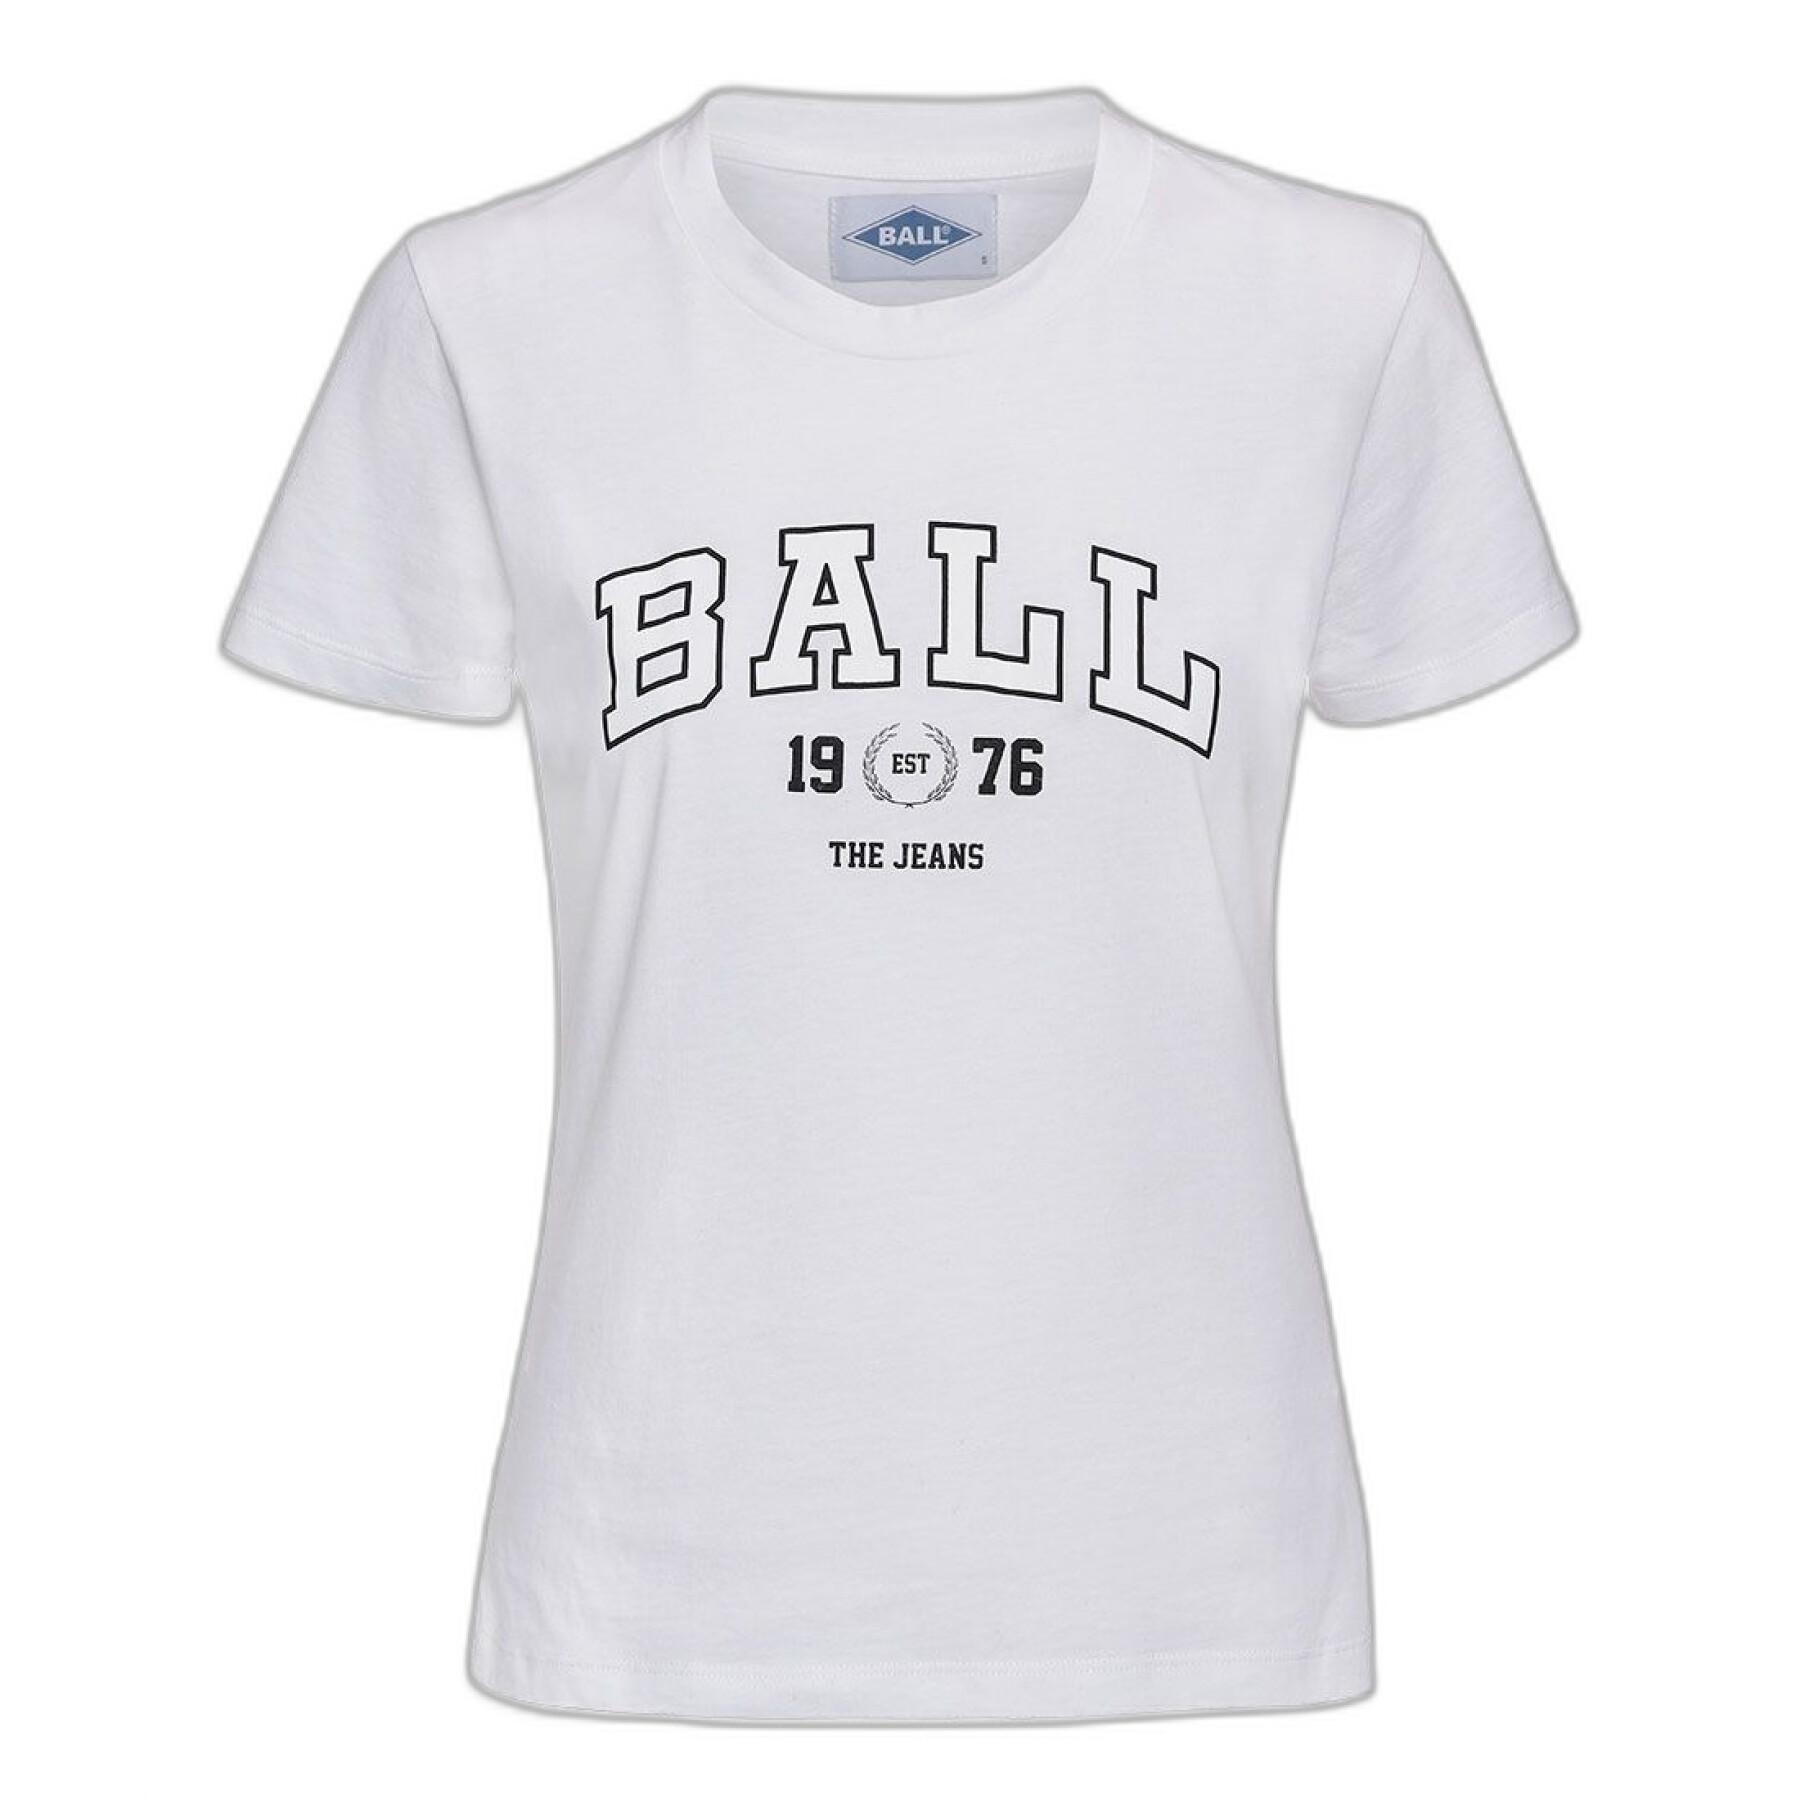 Women's T-shirt Ball J. Elway